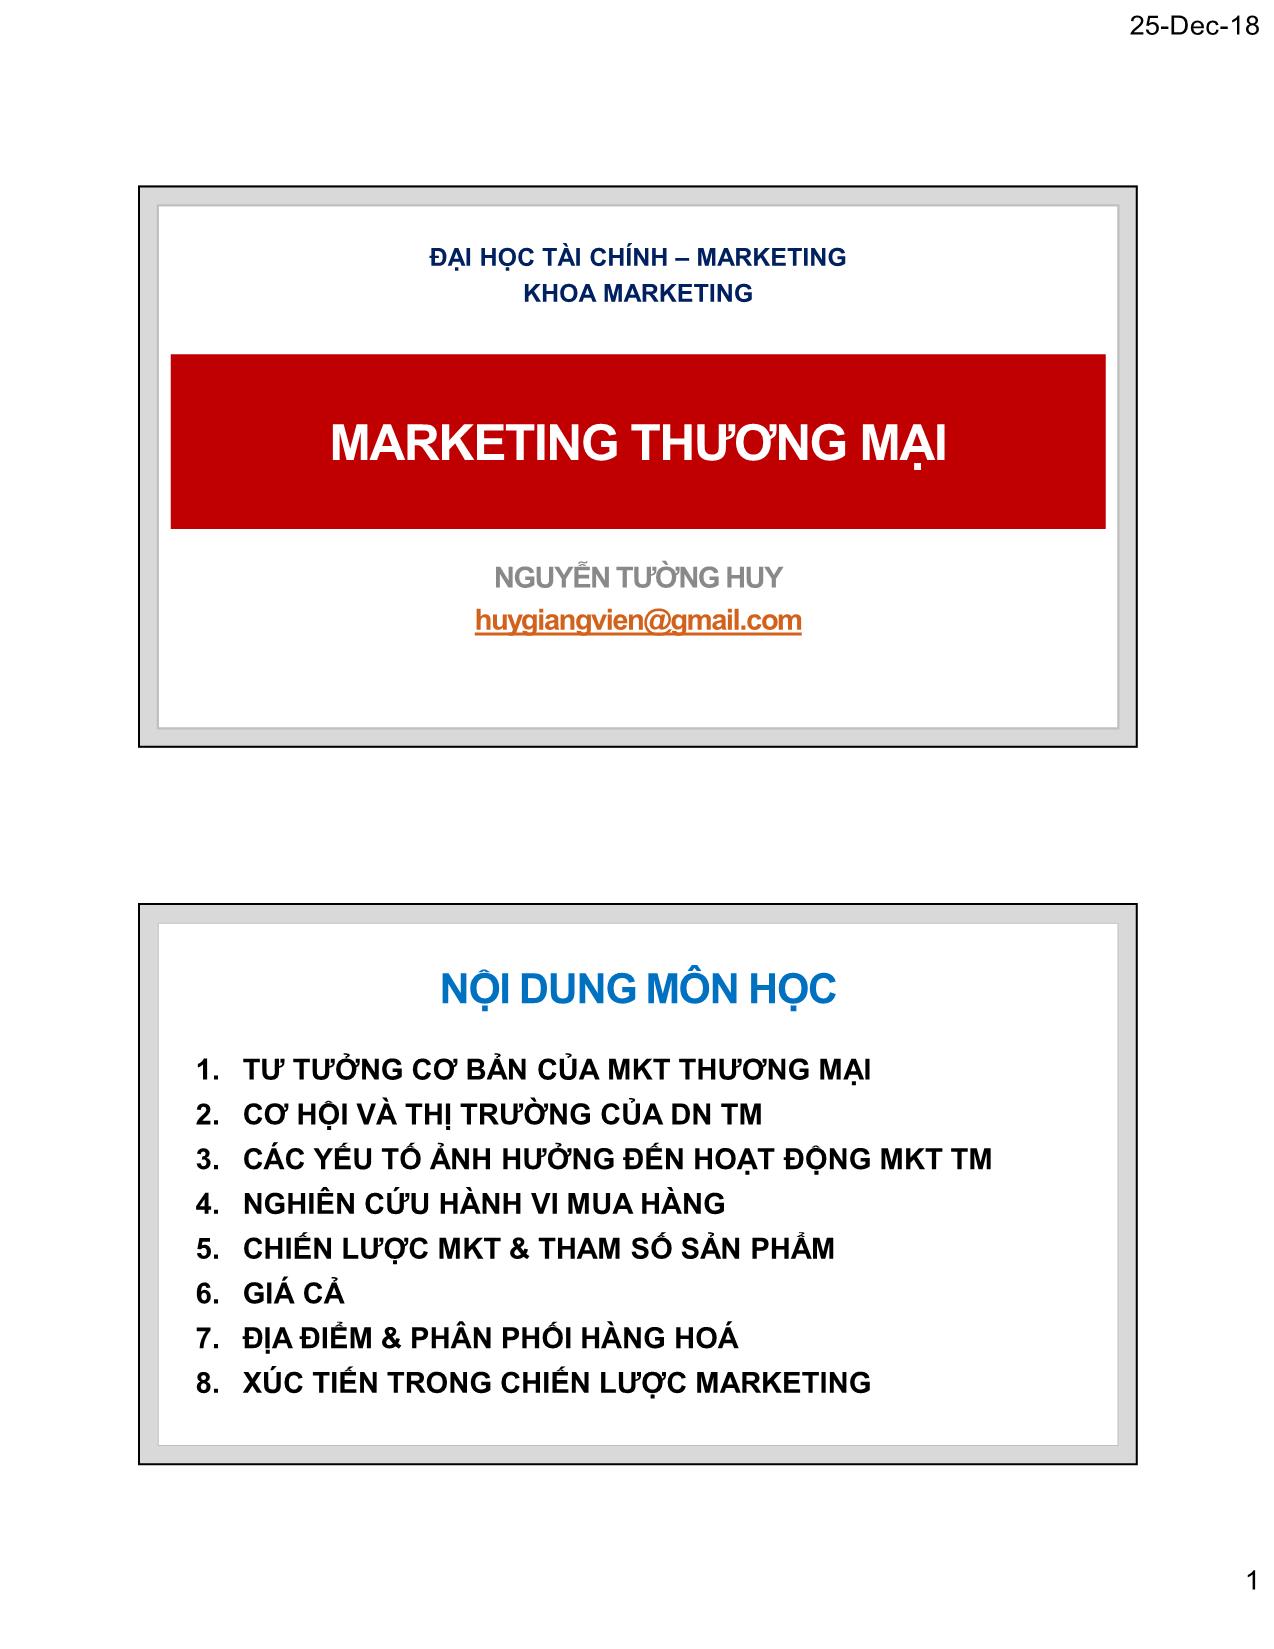 Bài giảng Marketing thương mại - Chương 1: Tư tưởng cơ bản của Marketing thương mại - Nguyễn Tường Huy trang 1